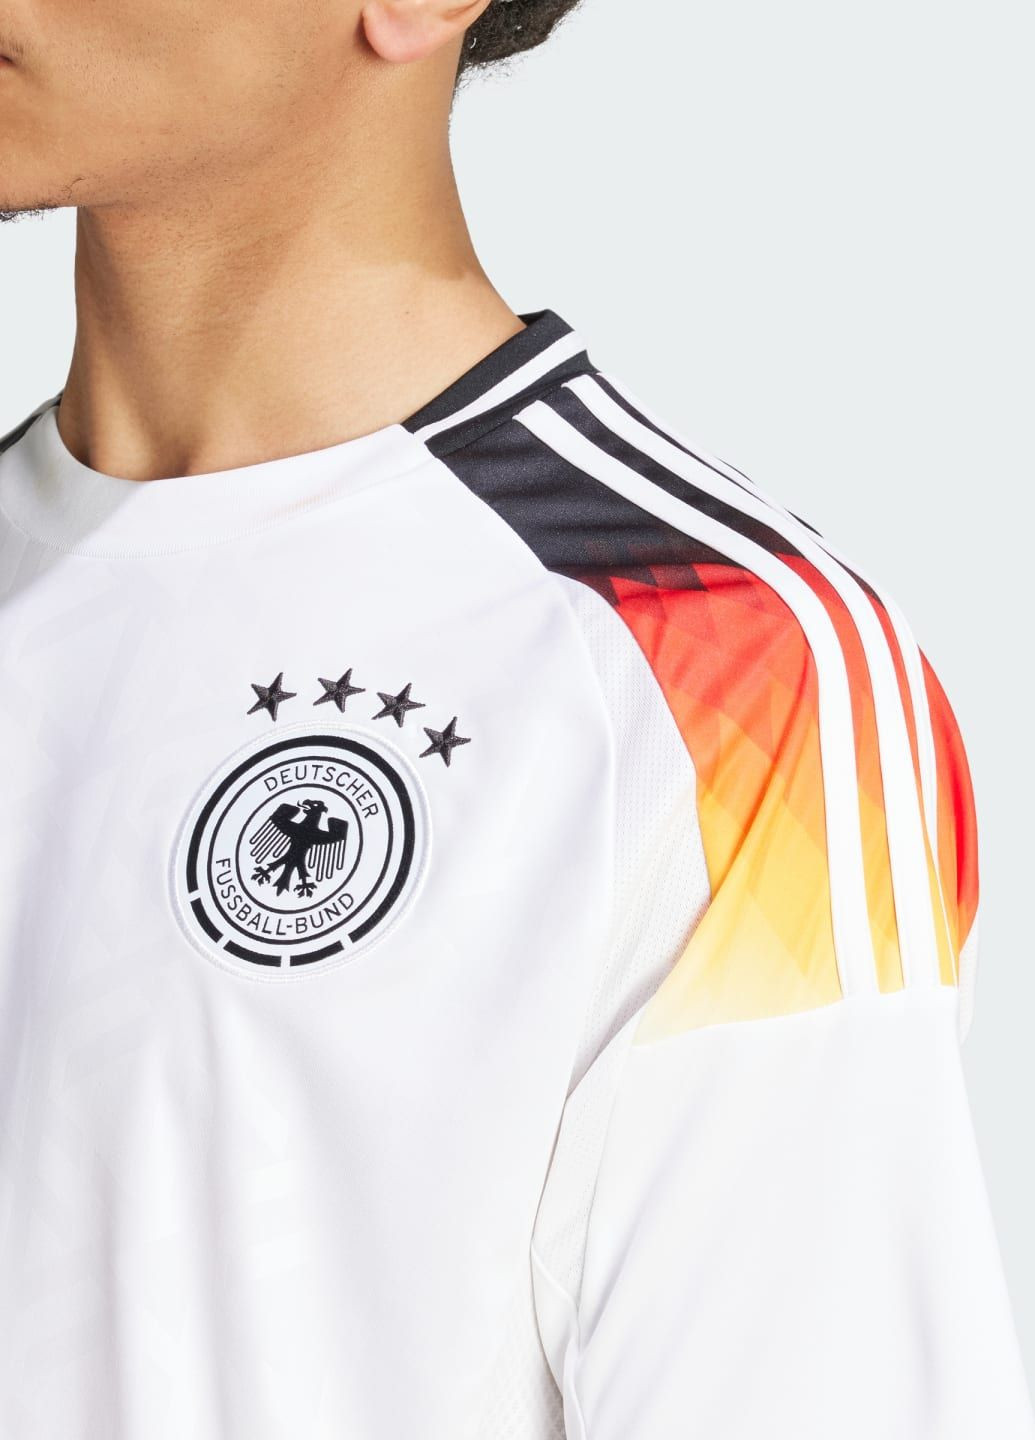 Домашня джерсі Germany 24 adidas логотип білий спортивні